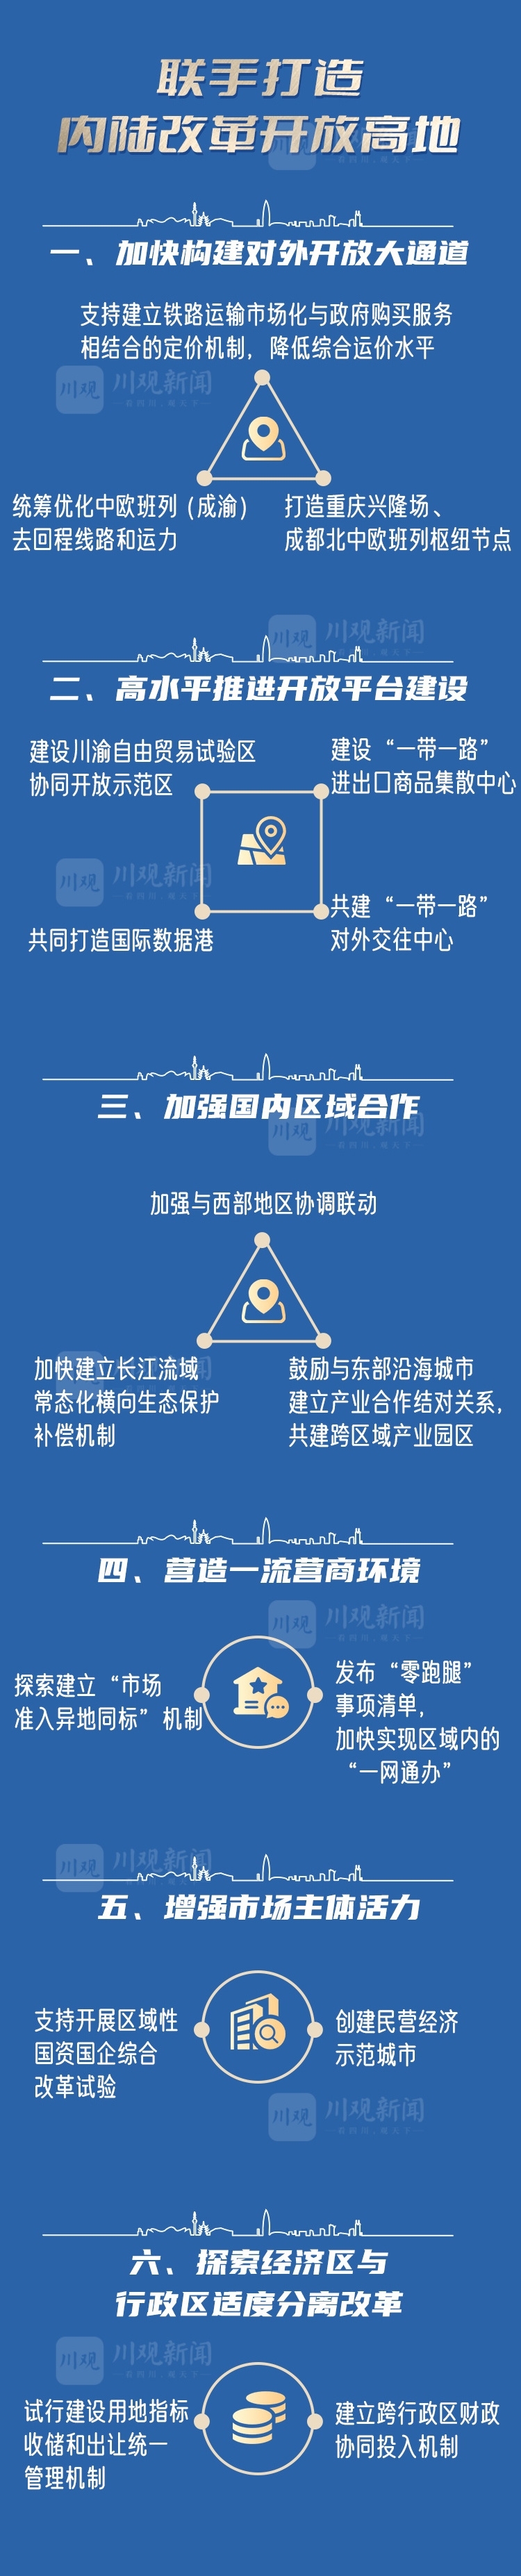 （转载）《成渝地区双城经济圈建设规划纲要》全图解来了！